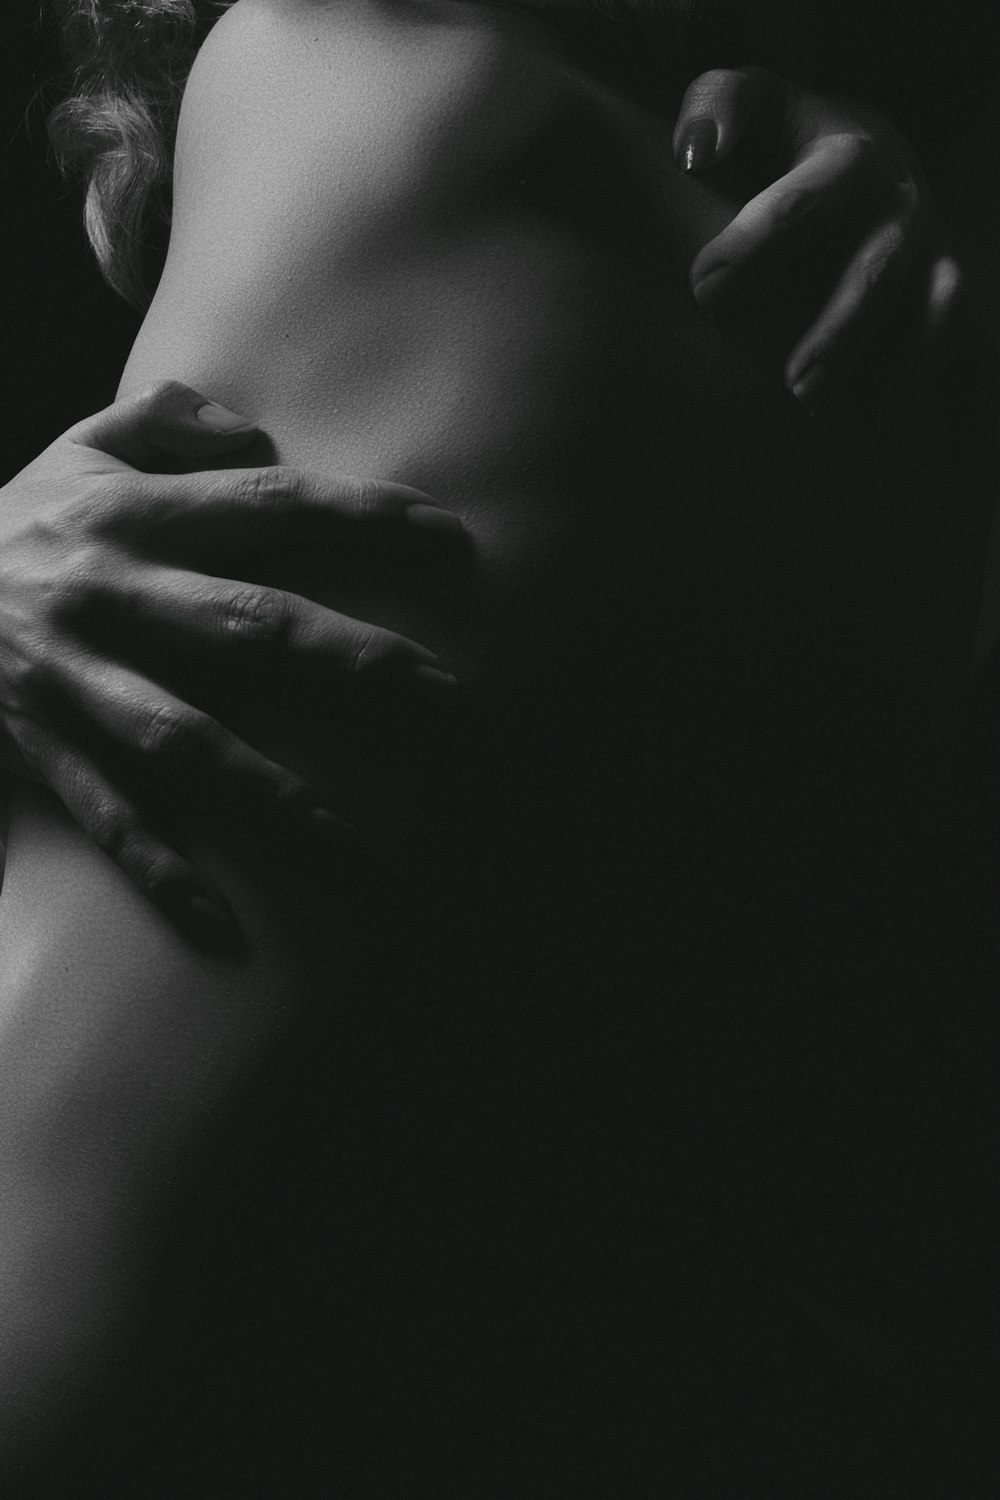 Una foto en blanco y negro del trasero de una mujer